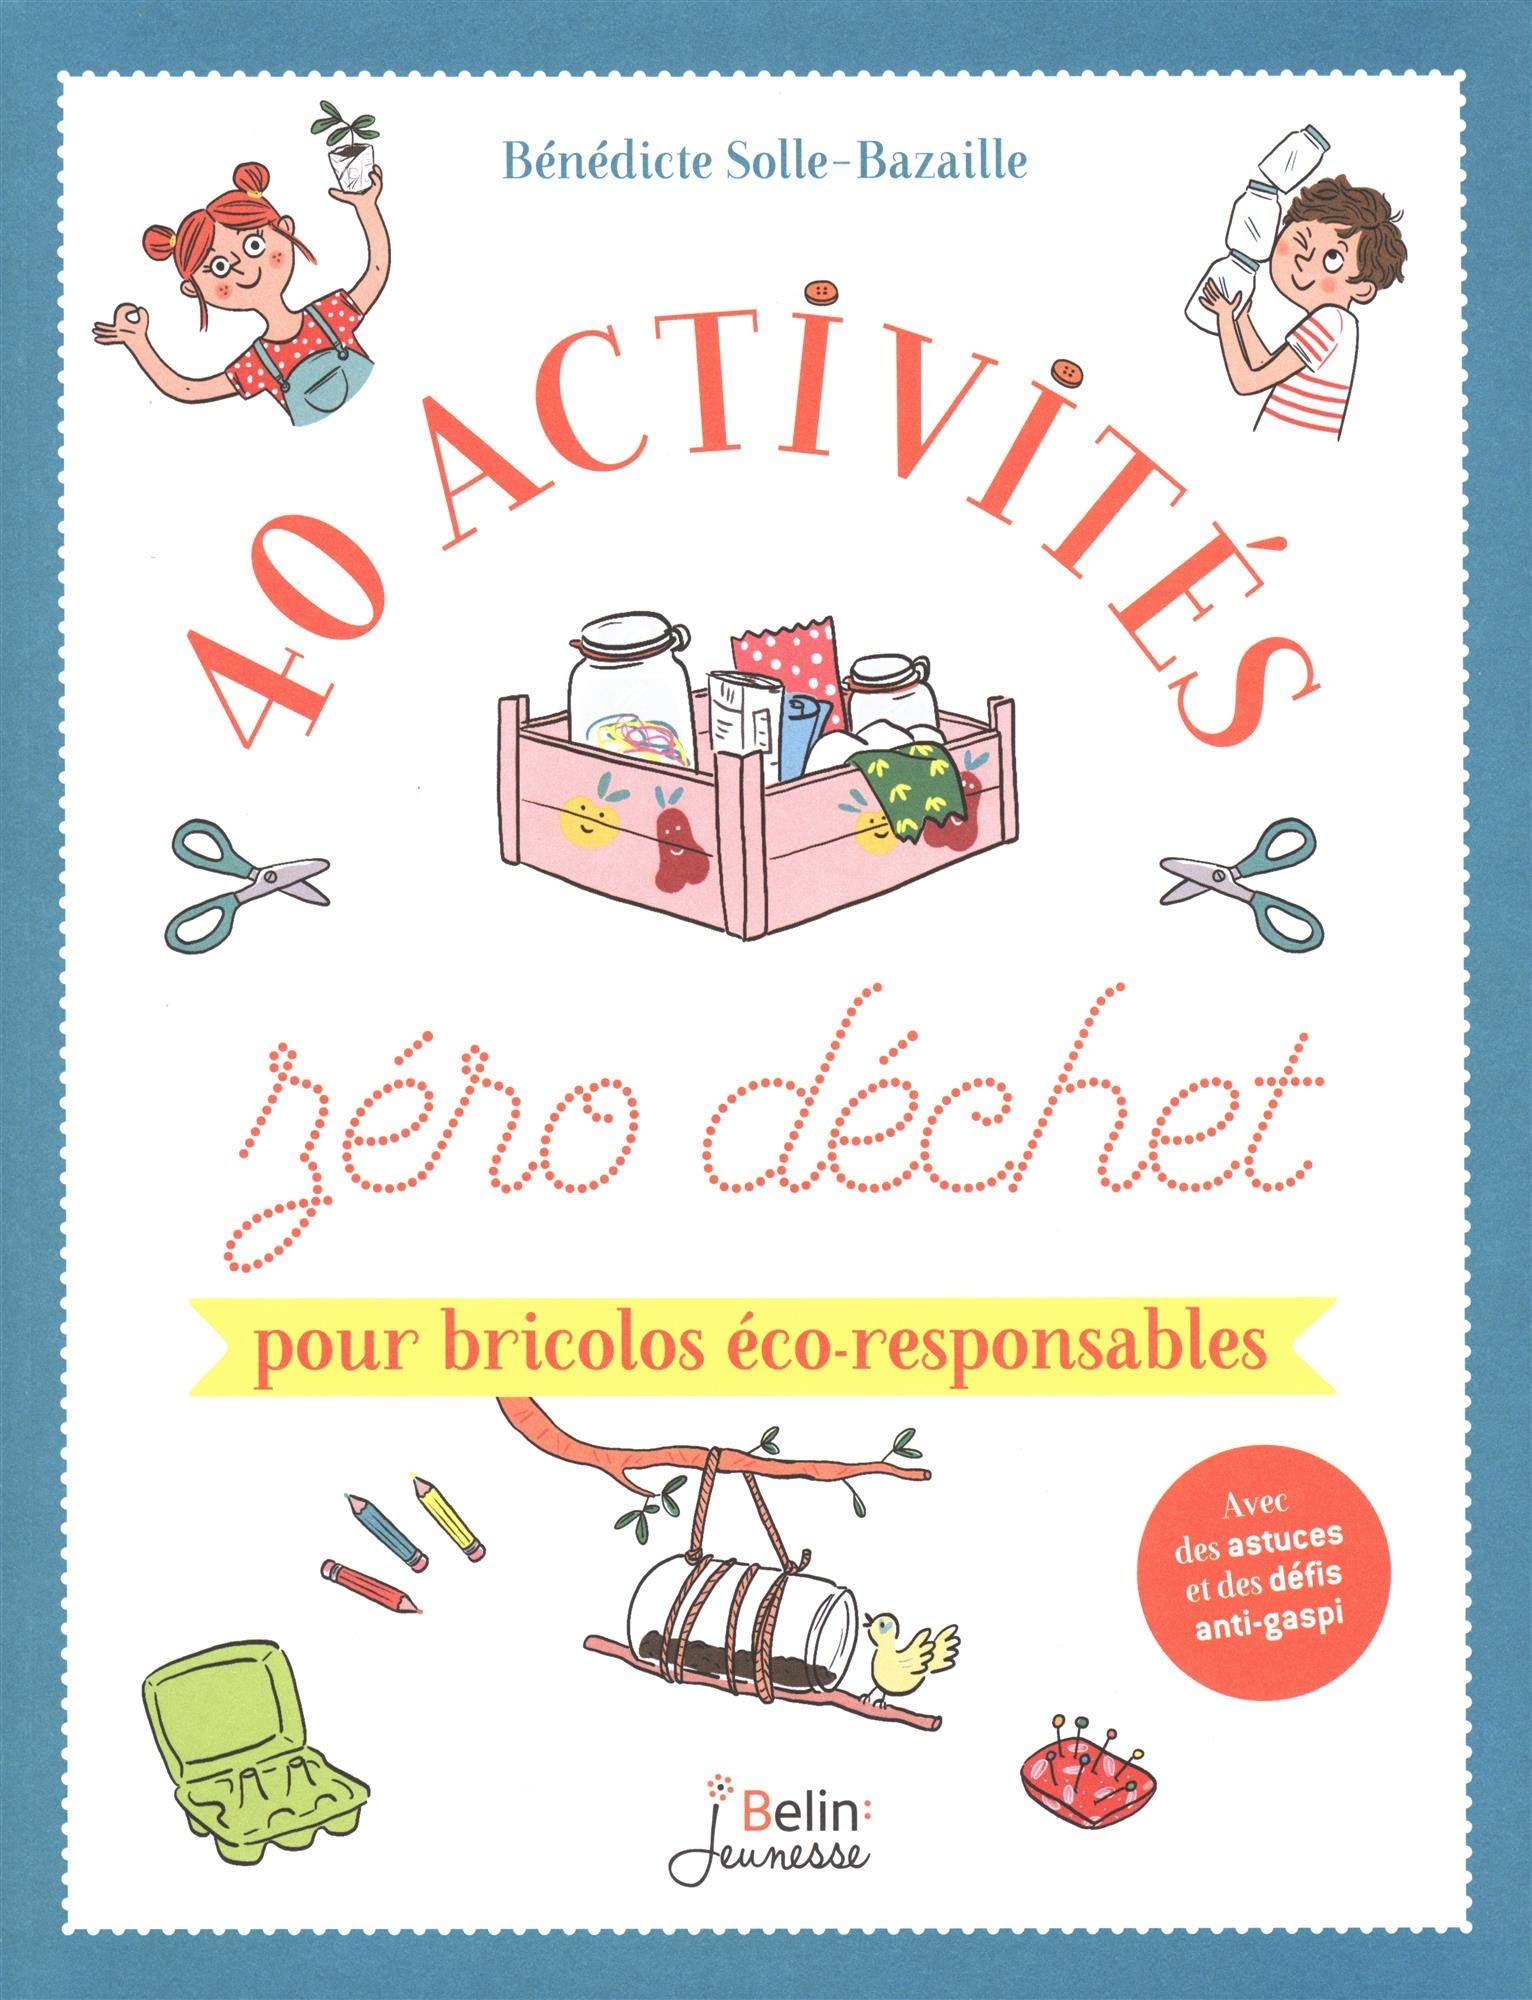 40 activités zéro déchet pour bricolos éco-responsables - De Bénédicte Bazaille - Editions Belin Jeunesse - Octobre 2019 - 96 pages - 12,90€